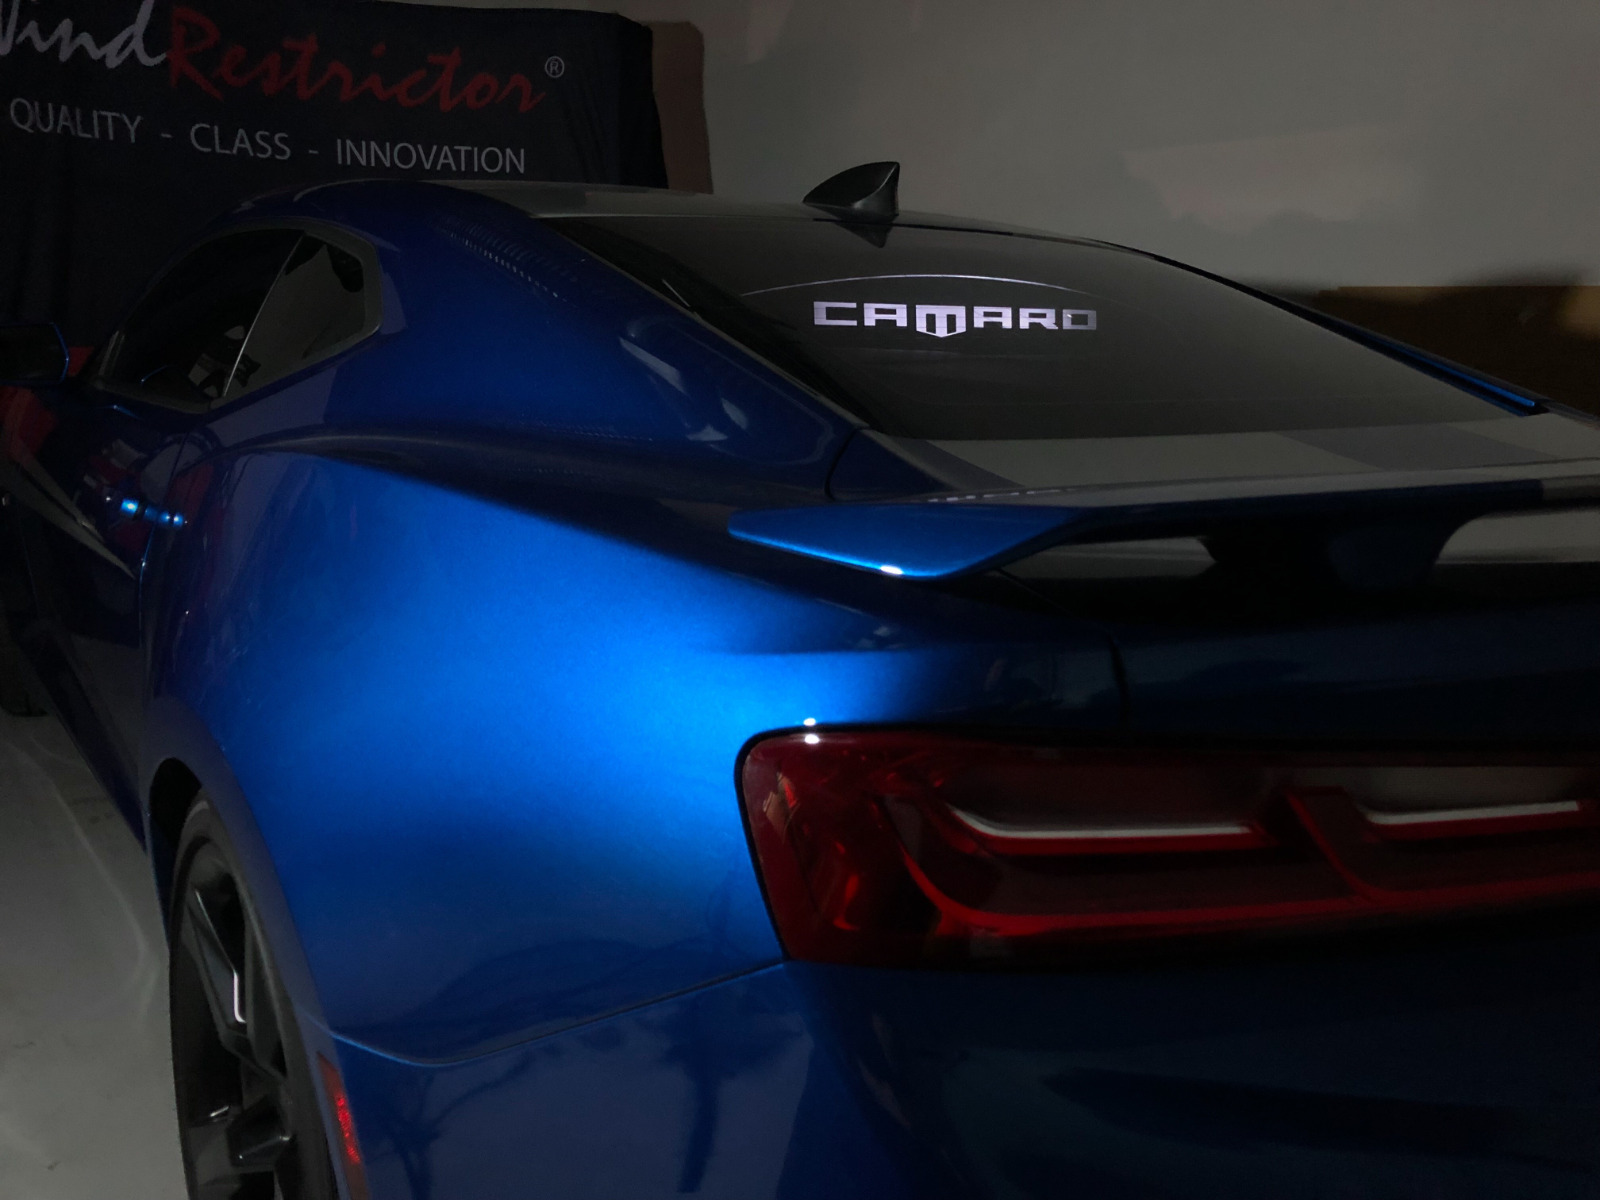 LED lighted rear window sign for Camaro Coupe Illuminated logo